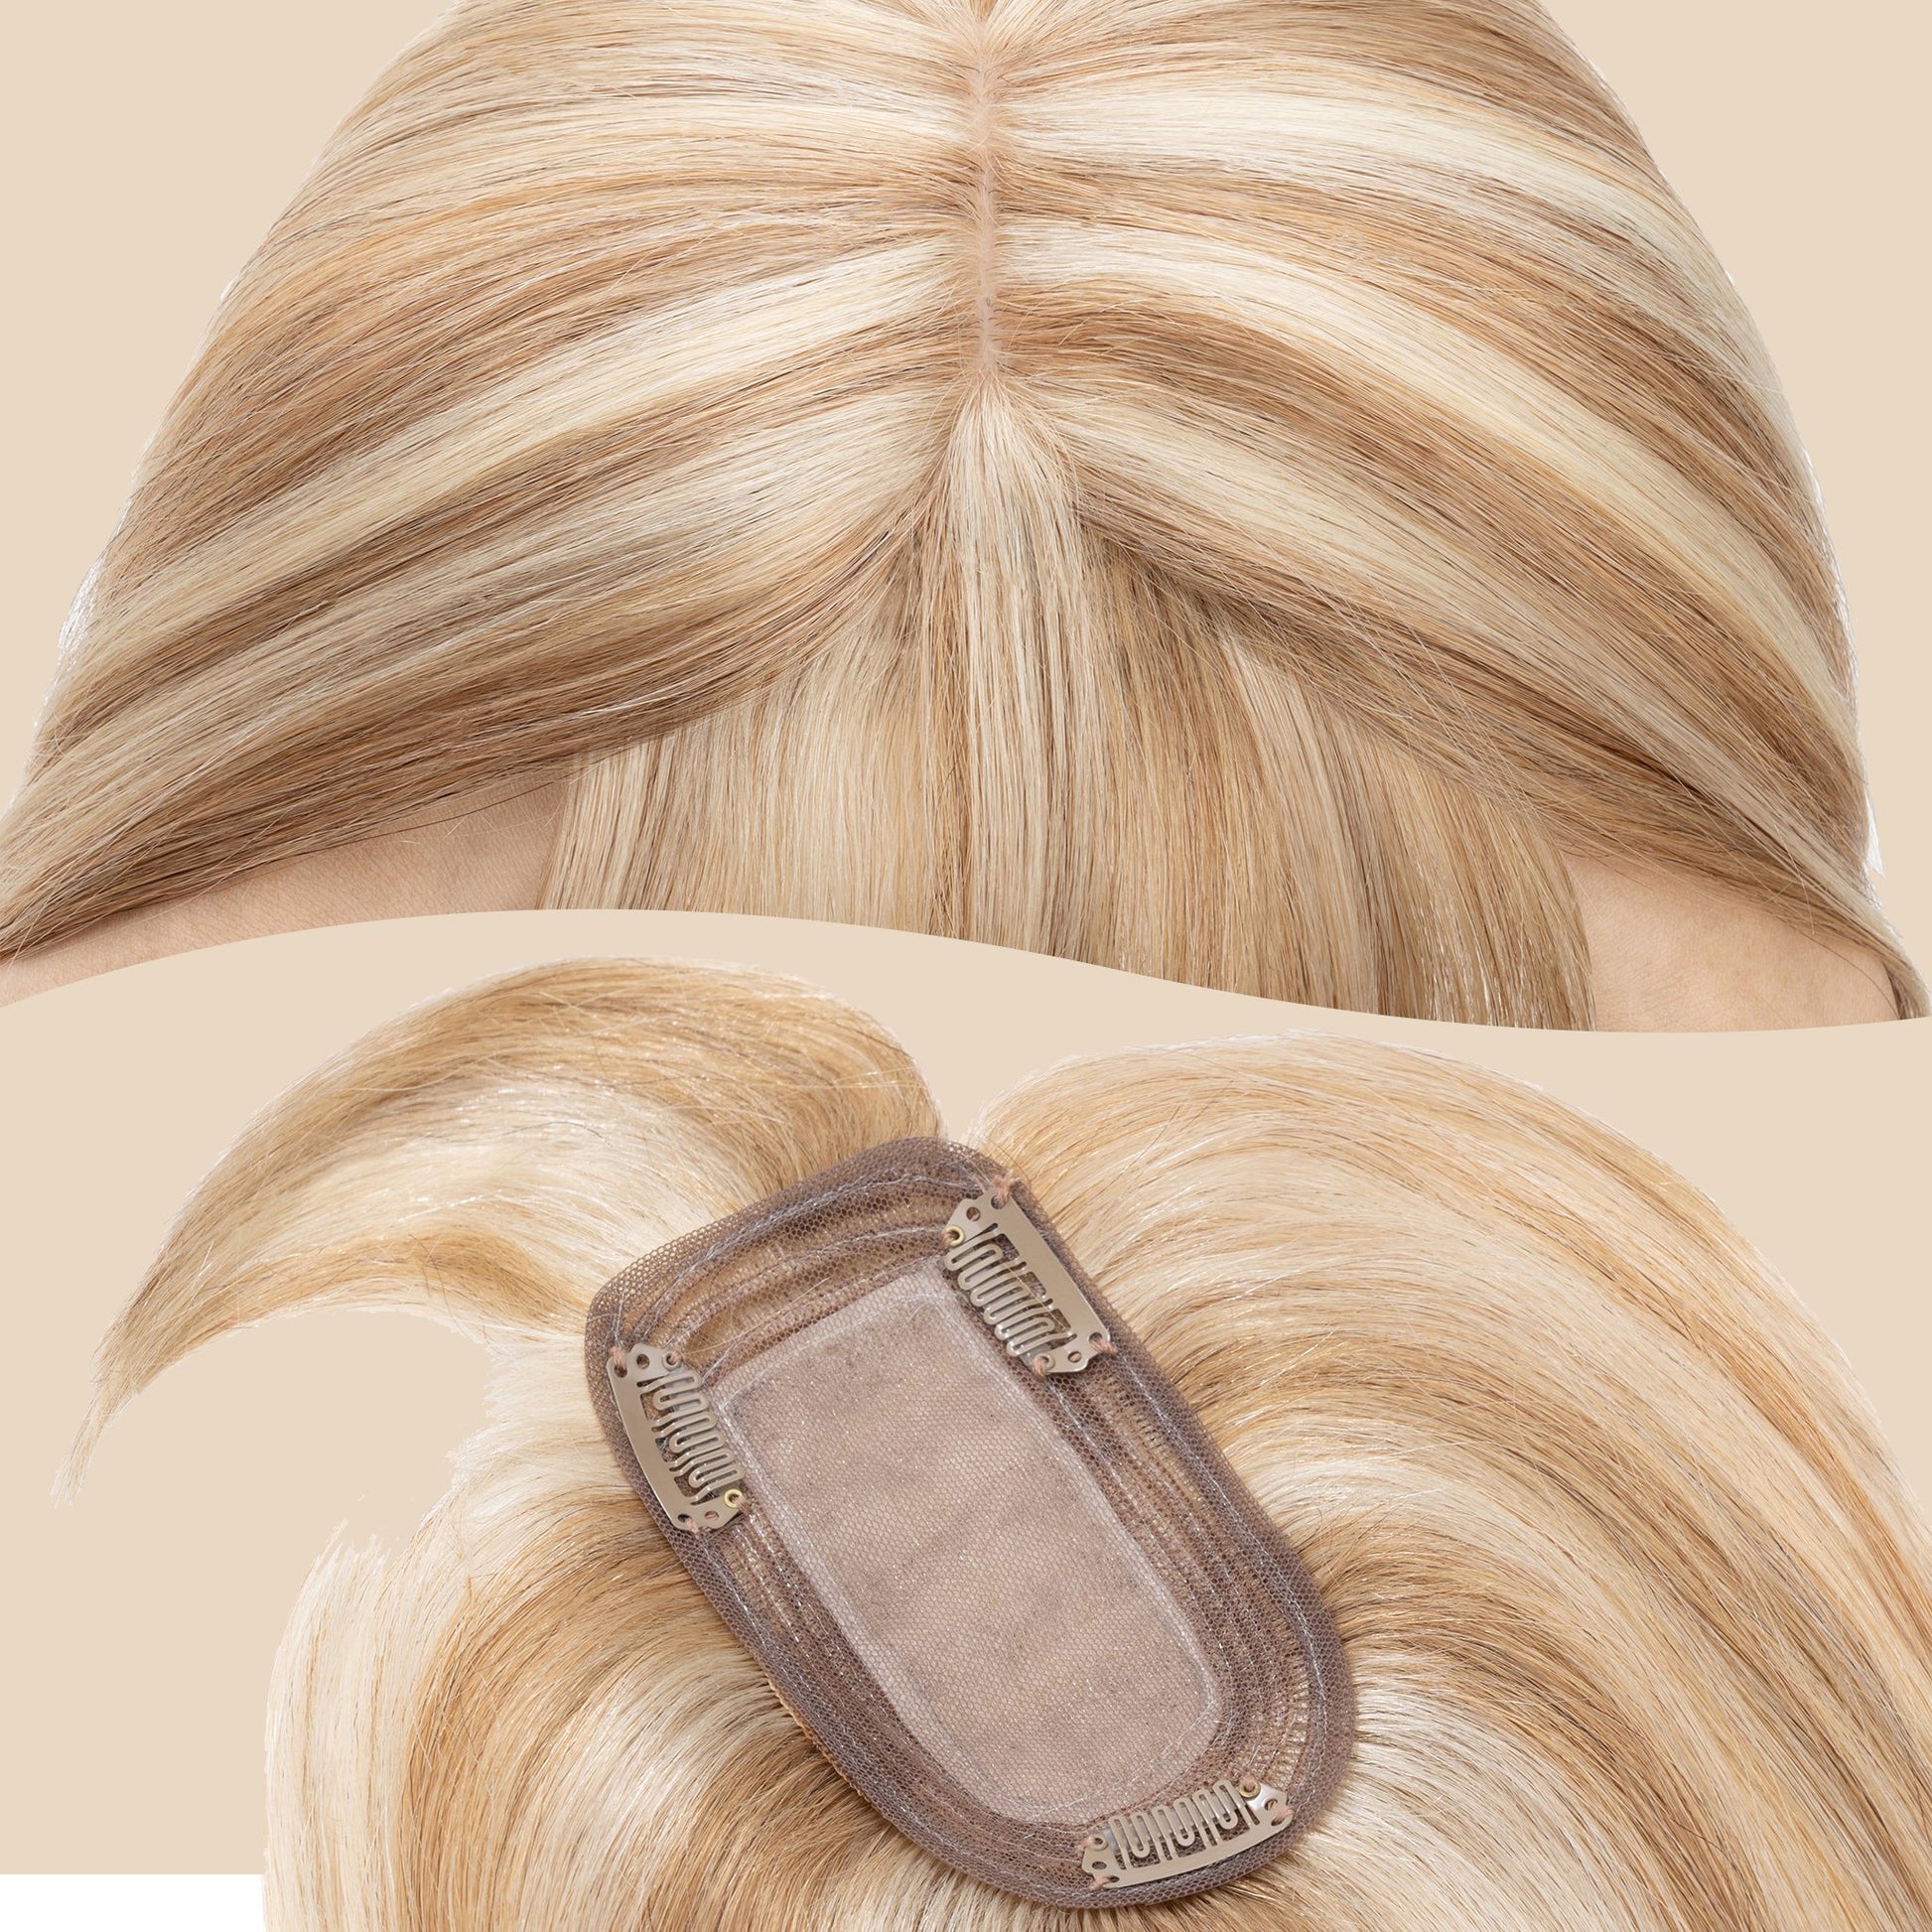 3x5" Bionic Scalp Top Golden Brown Blonde Highlight Human Hair Topper with Bangs segohair.com